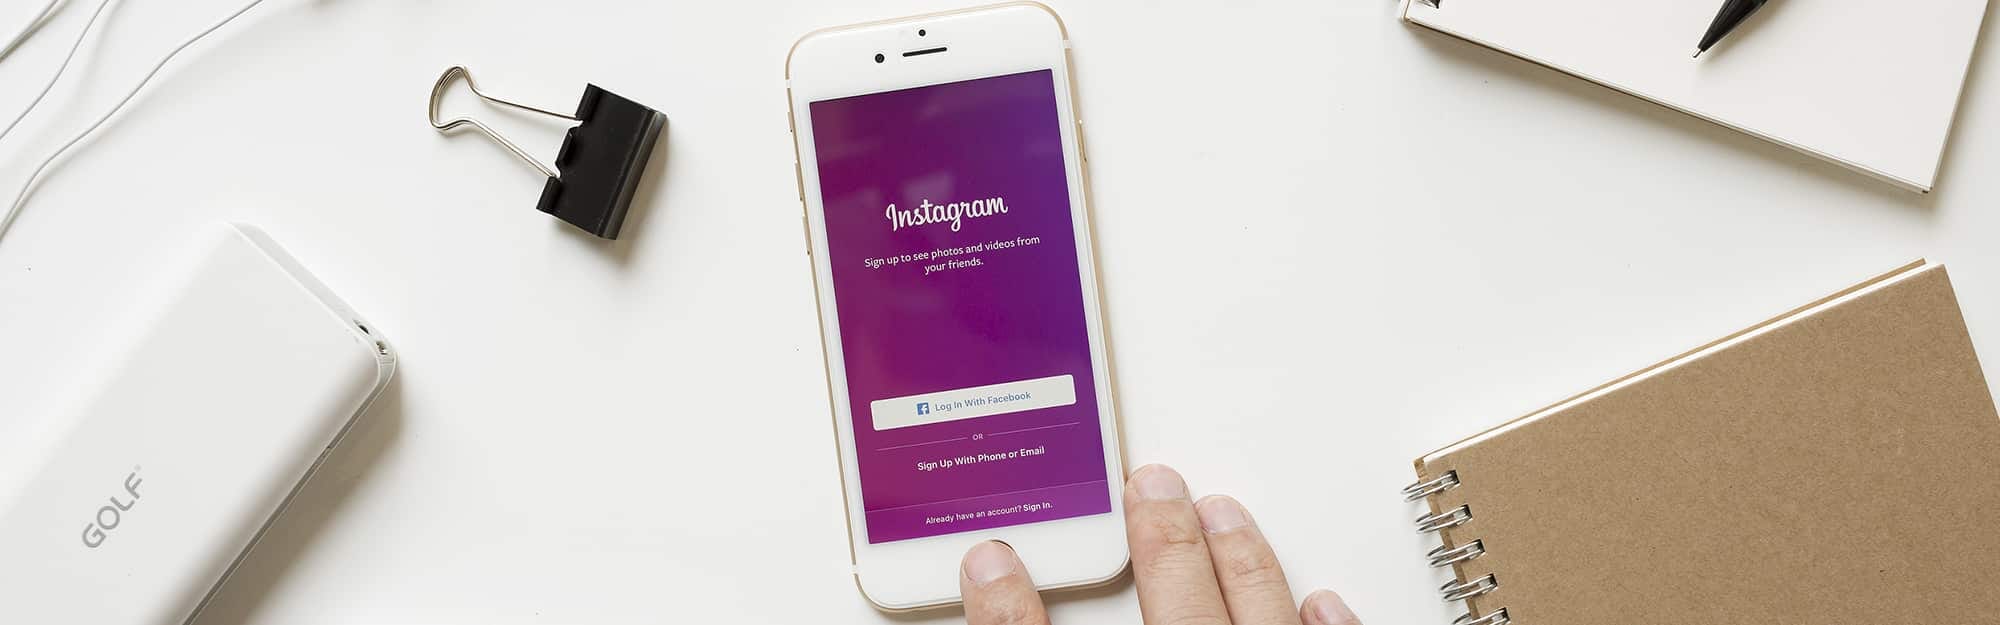 social media monitoring Instagram captions